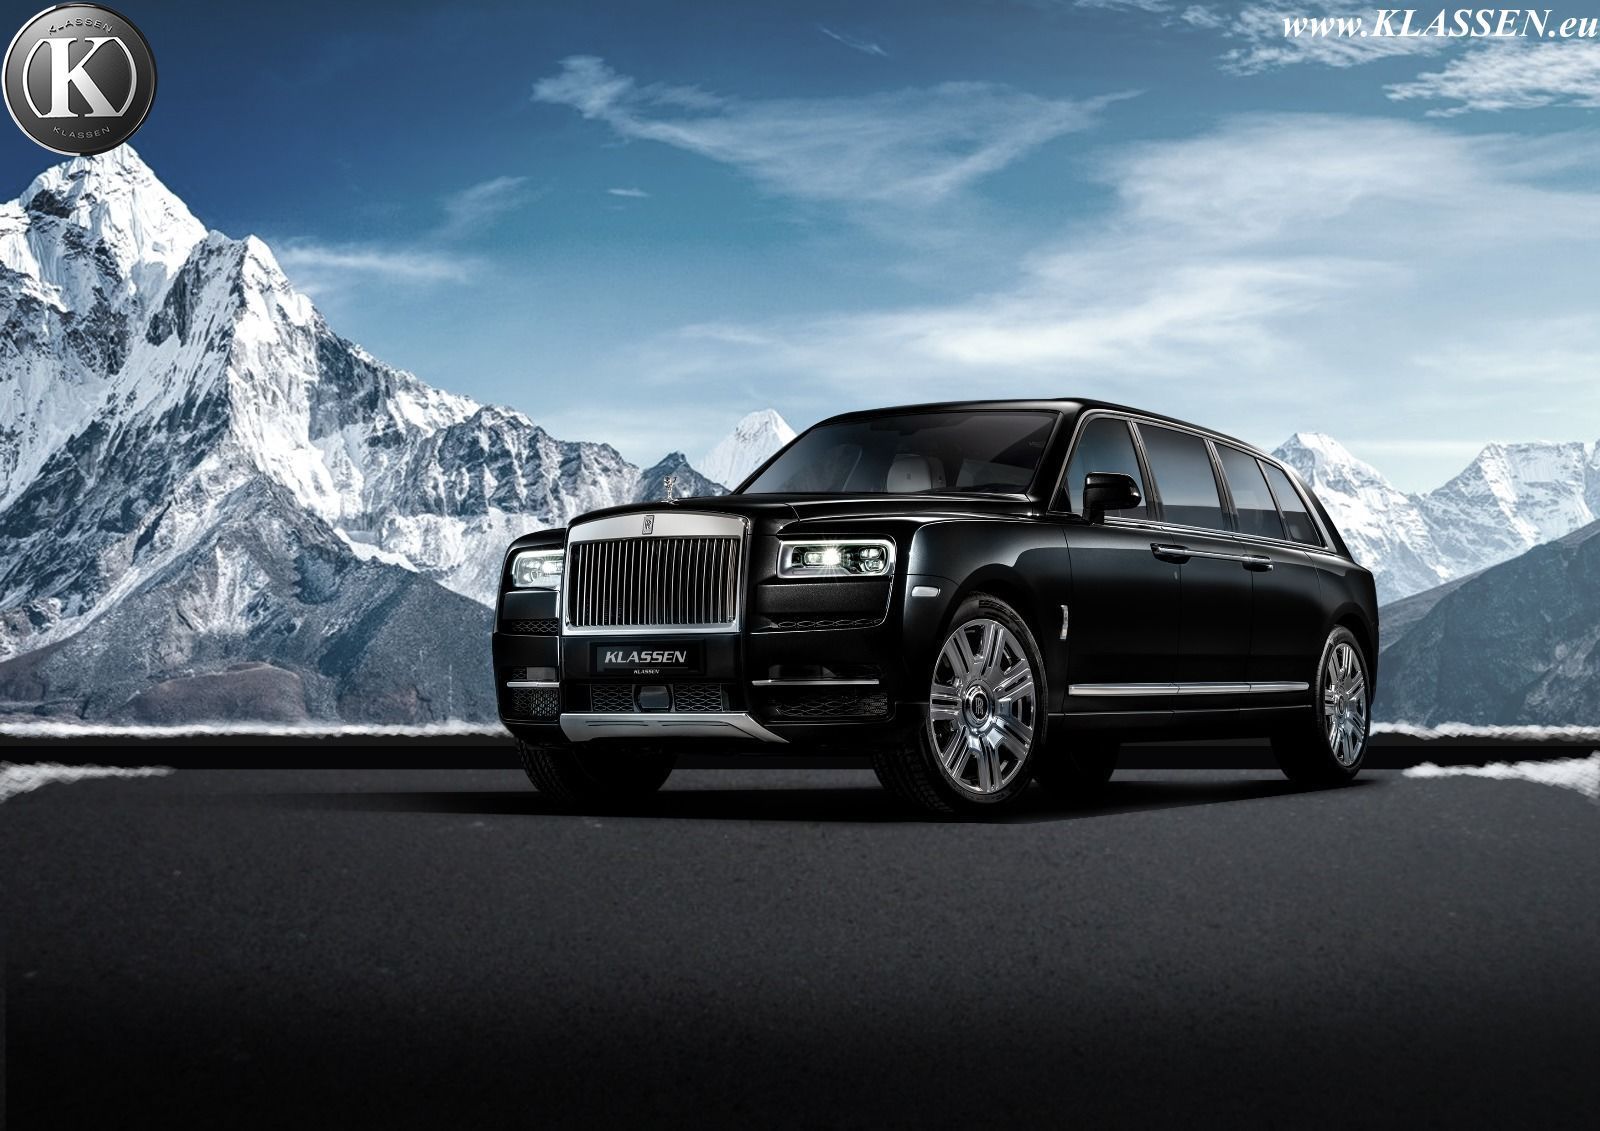 KLASSEN VIP - Manufacturer - Rolls Royce - Model - Ghost